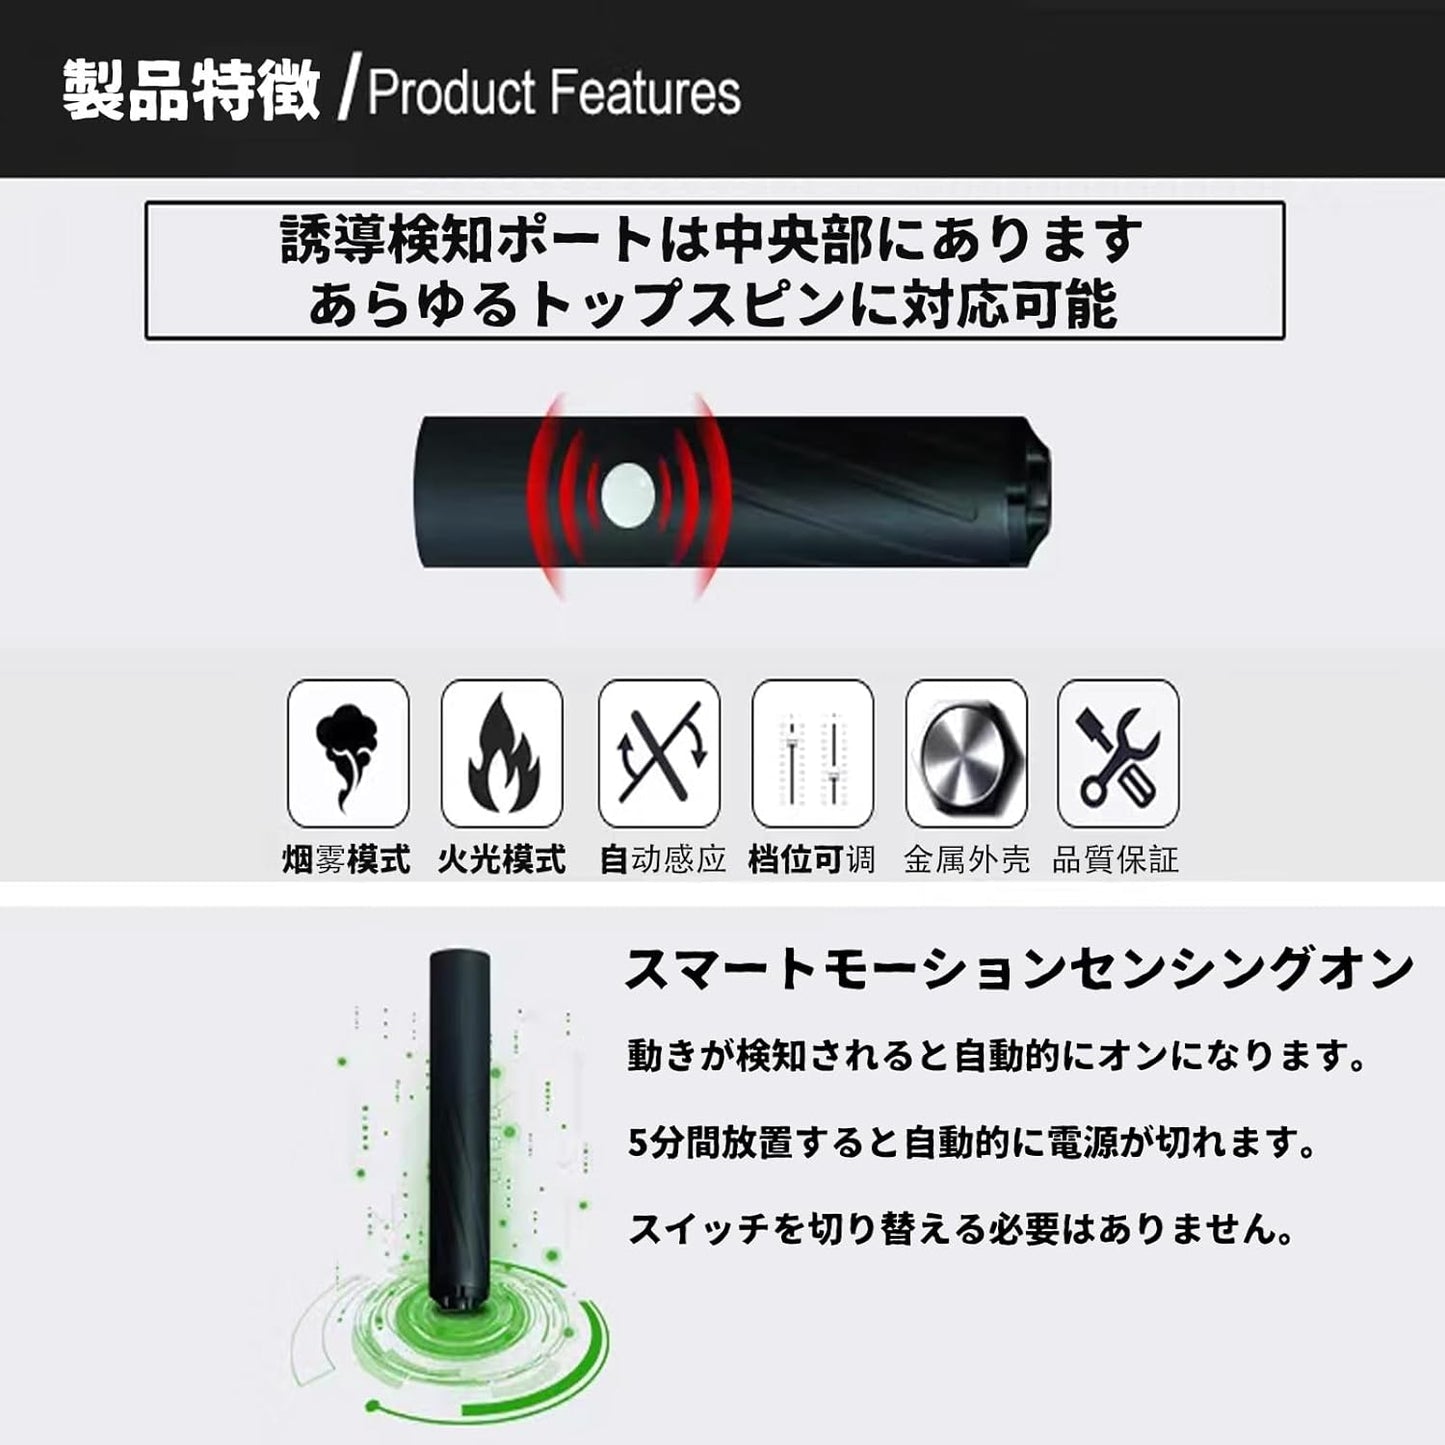 Korea Only Linksライブカート式風おもちゃ銃 対応 サイレンサーアダプター 専属部品 レプリカ フラッシュハイダー 14mm逆ネジ対応